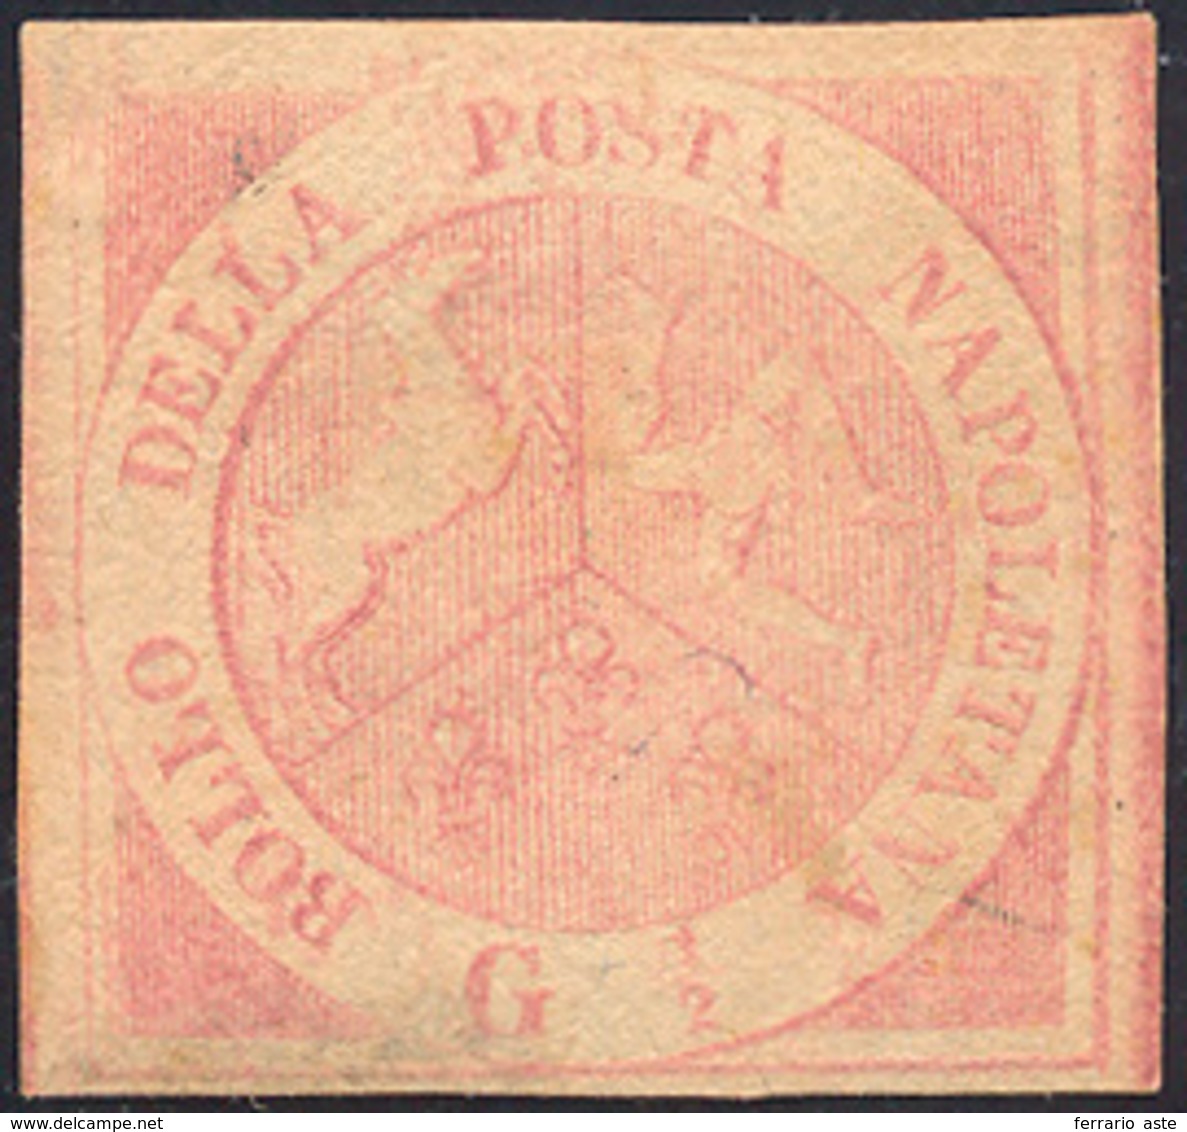 281 1858 - 1/2 Grano Rosa Carminio Chiaro, I Tavola (1c), Nuovo, Gran Parte Di Gomma Originale, Perfetto... - Neapel